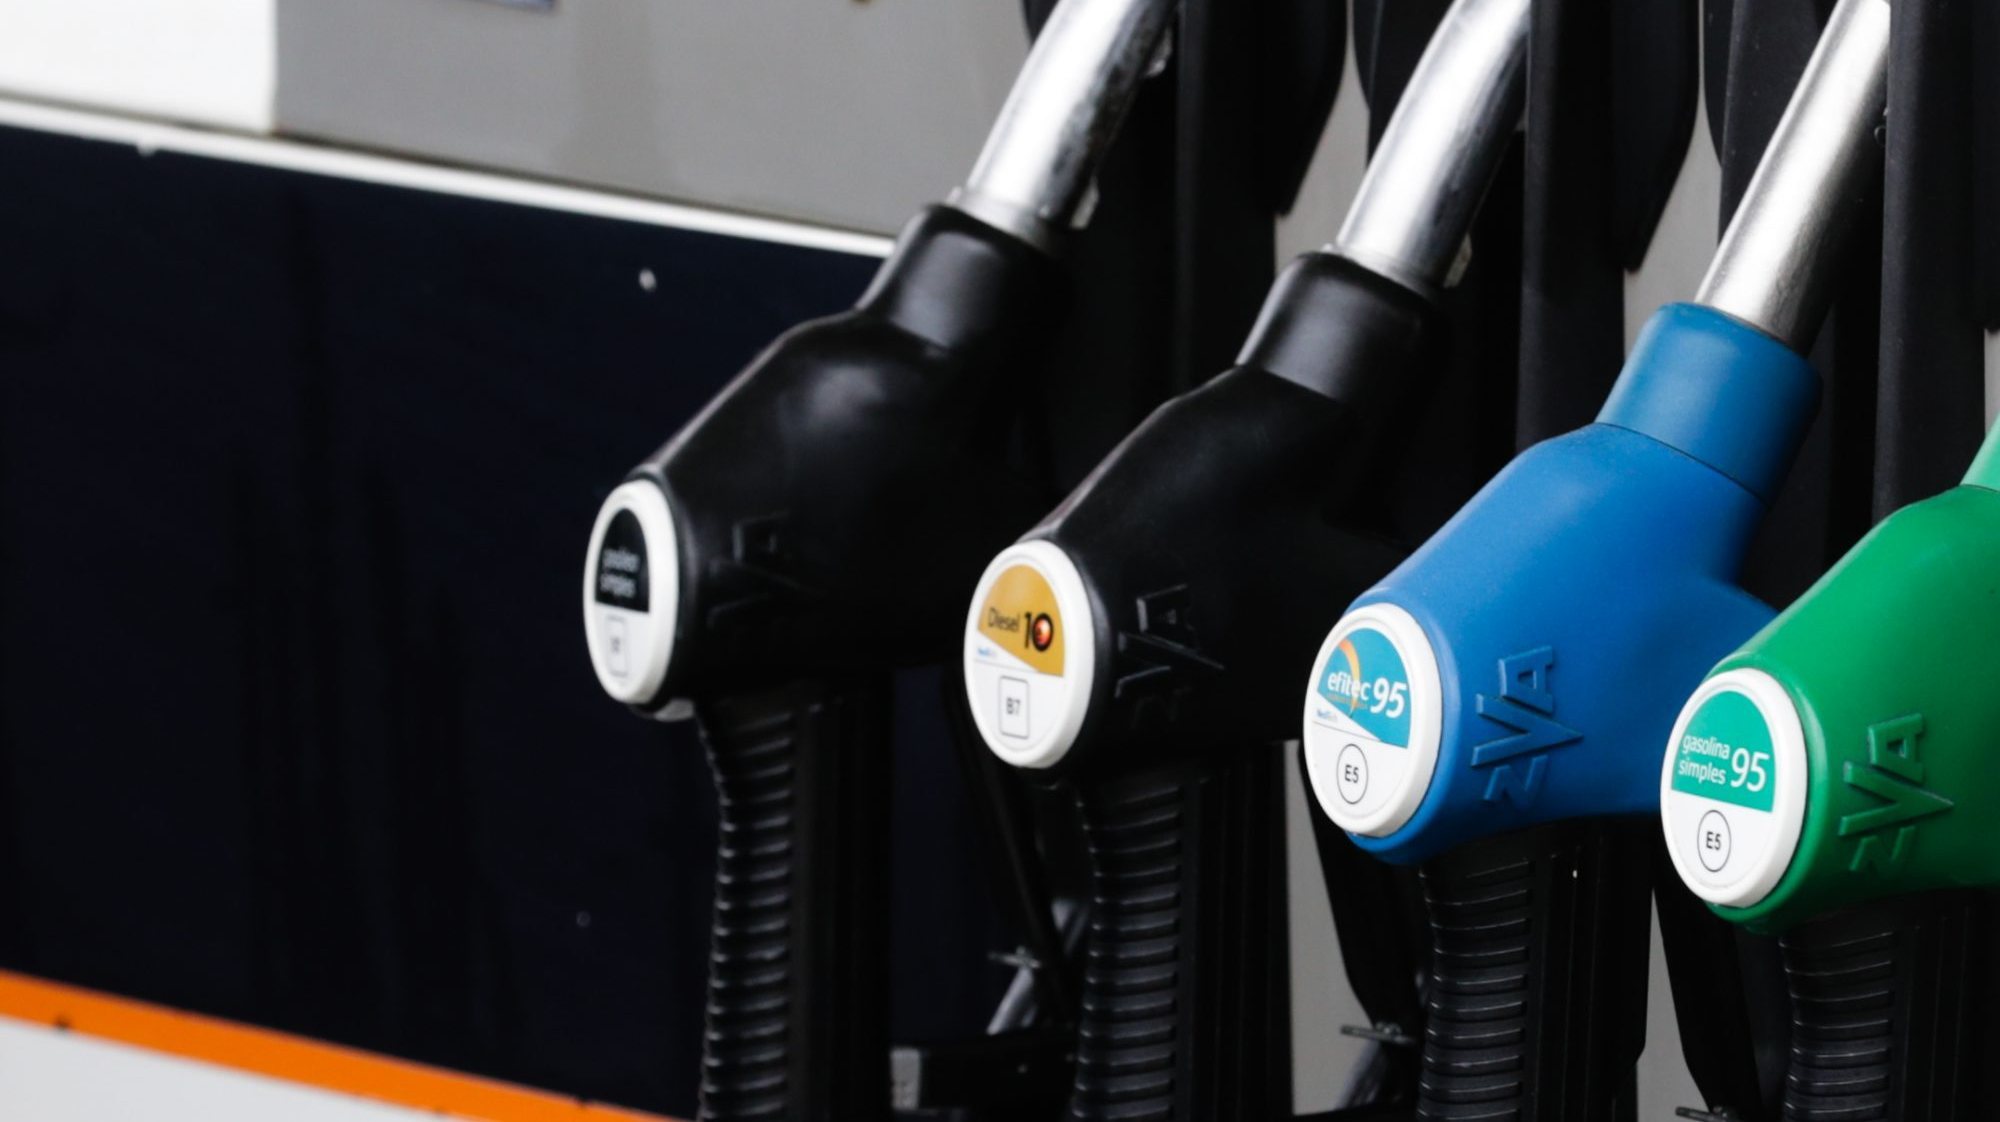 Preço médio semanal da ERSE desceu 1% para a gasolina e 3,5% para o gasóleo